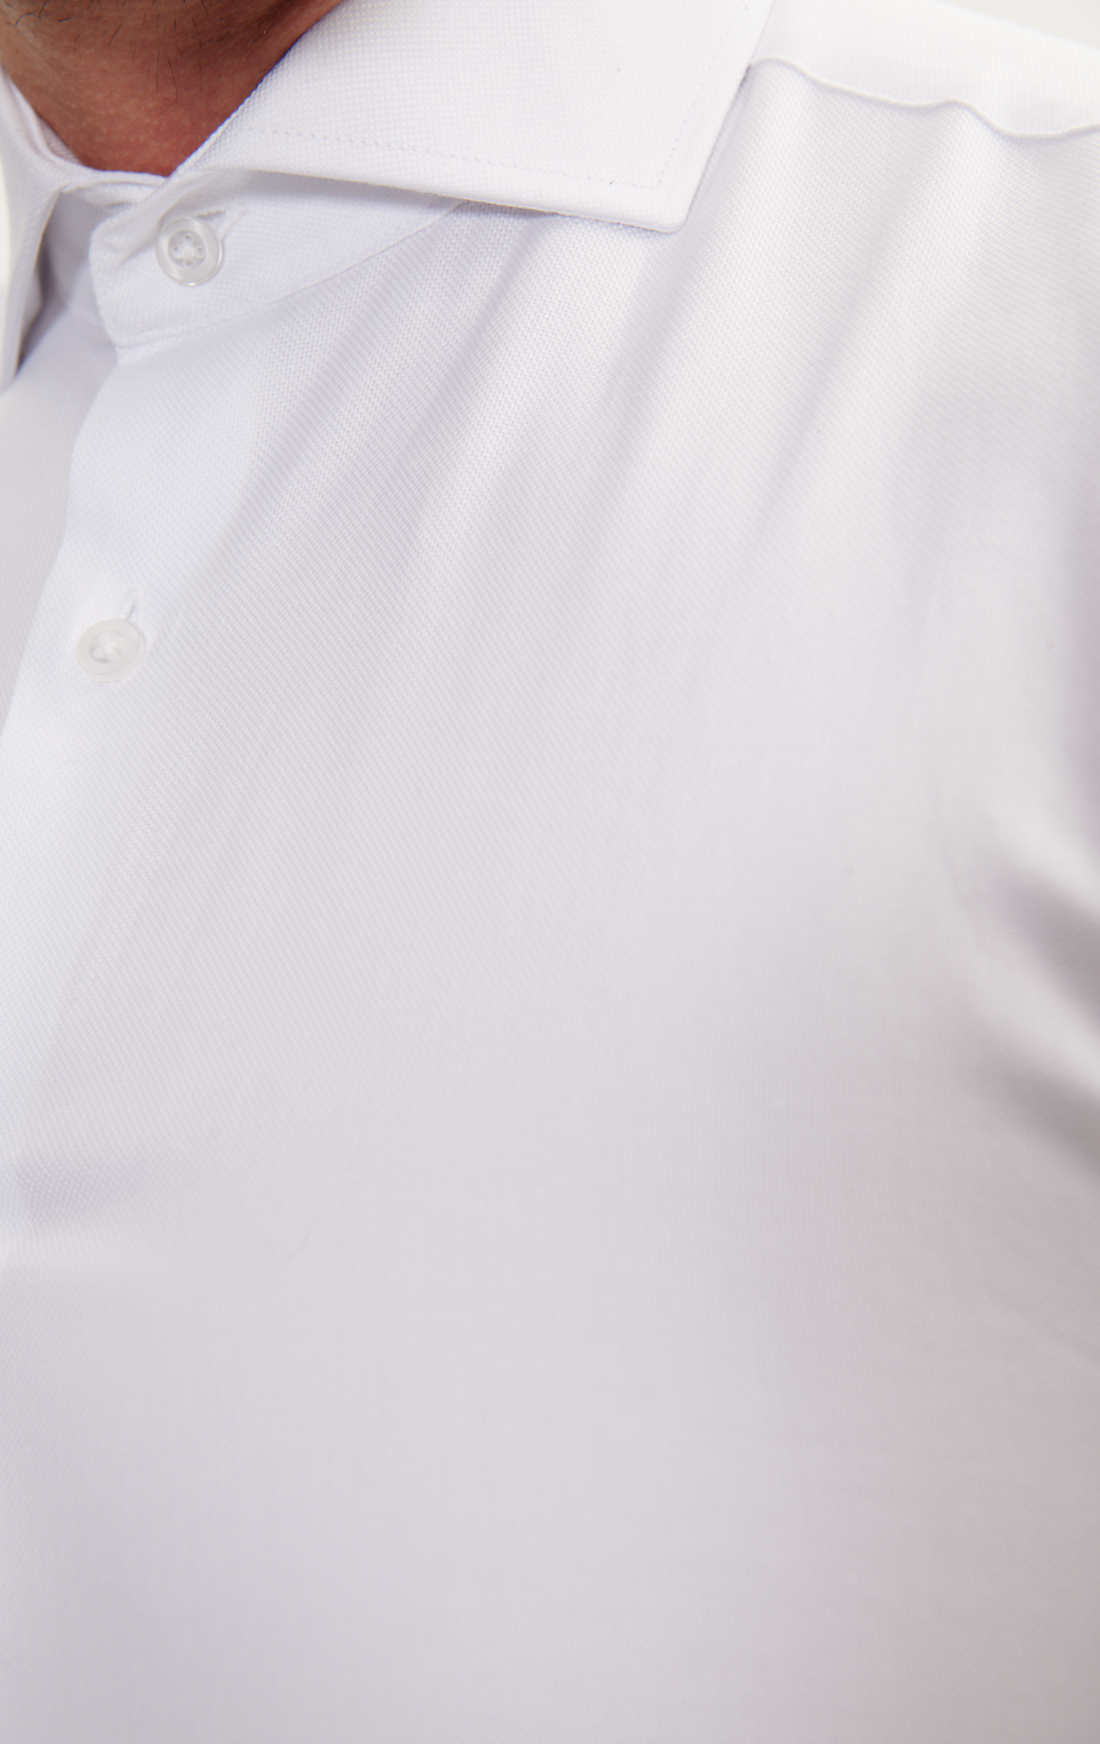 An - Dress Shirt Pique White